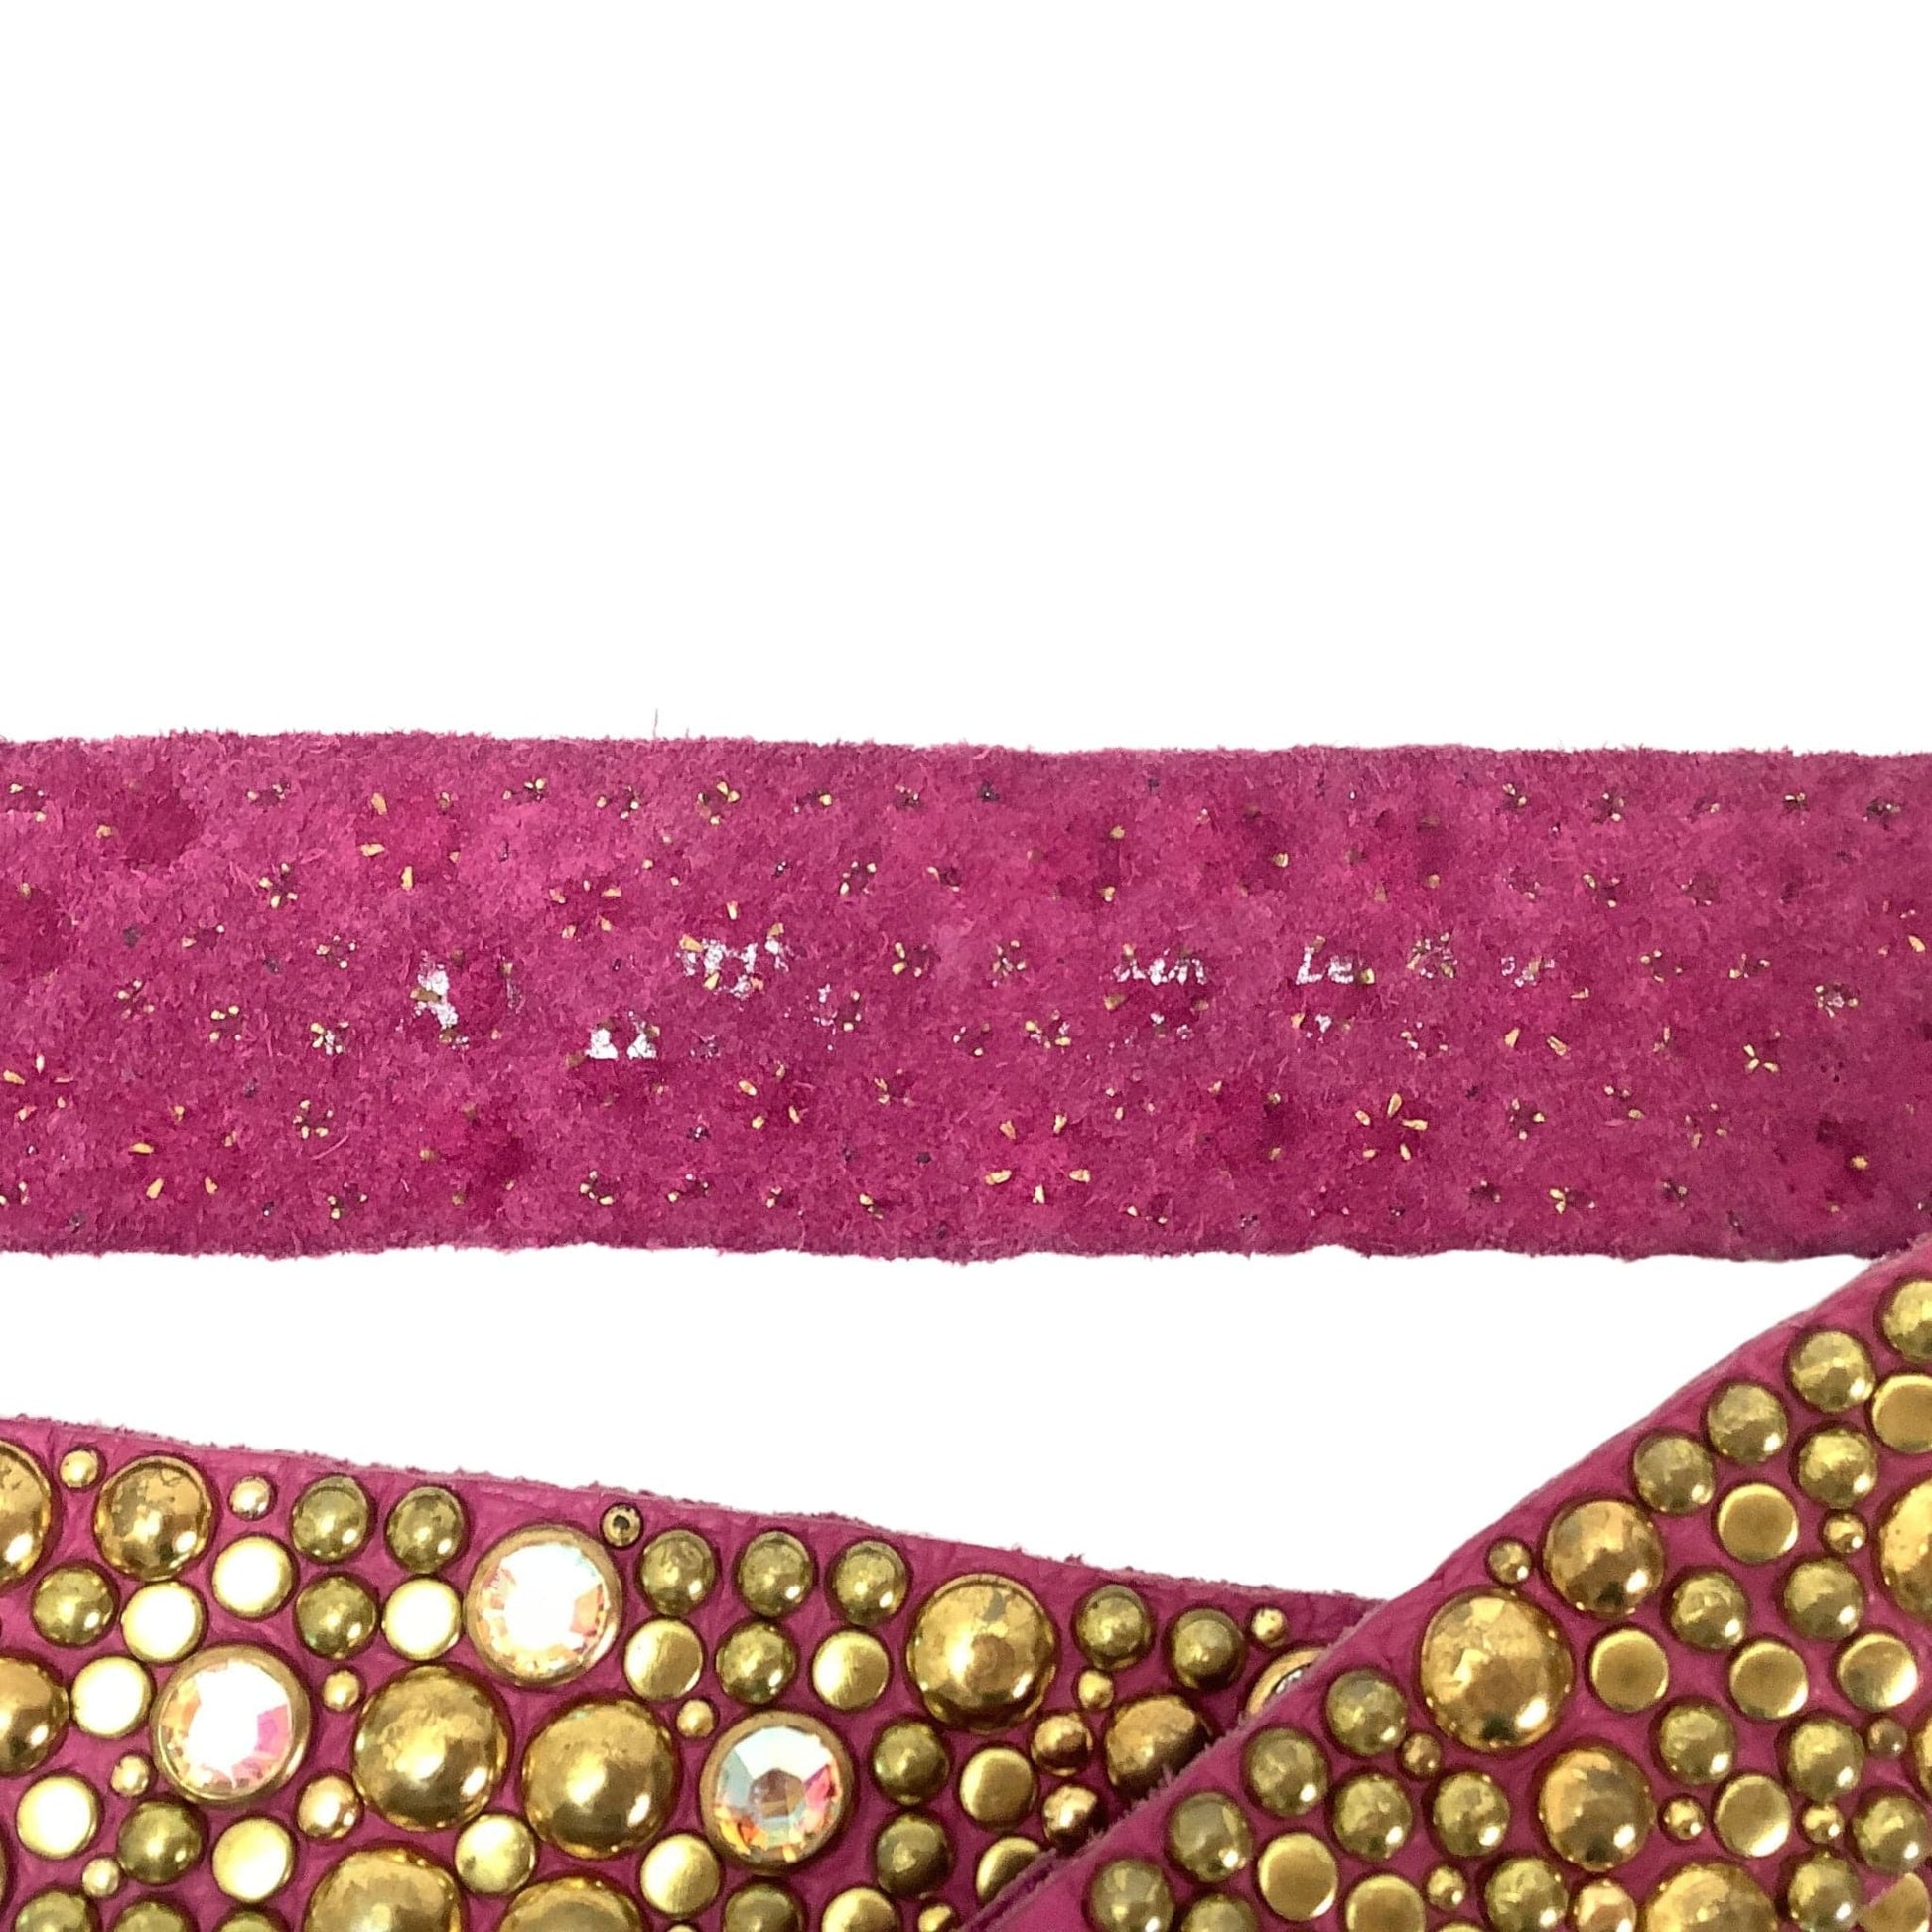 Pink Studded Leather Belt Medium / Pink / Vintage 1980s